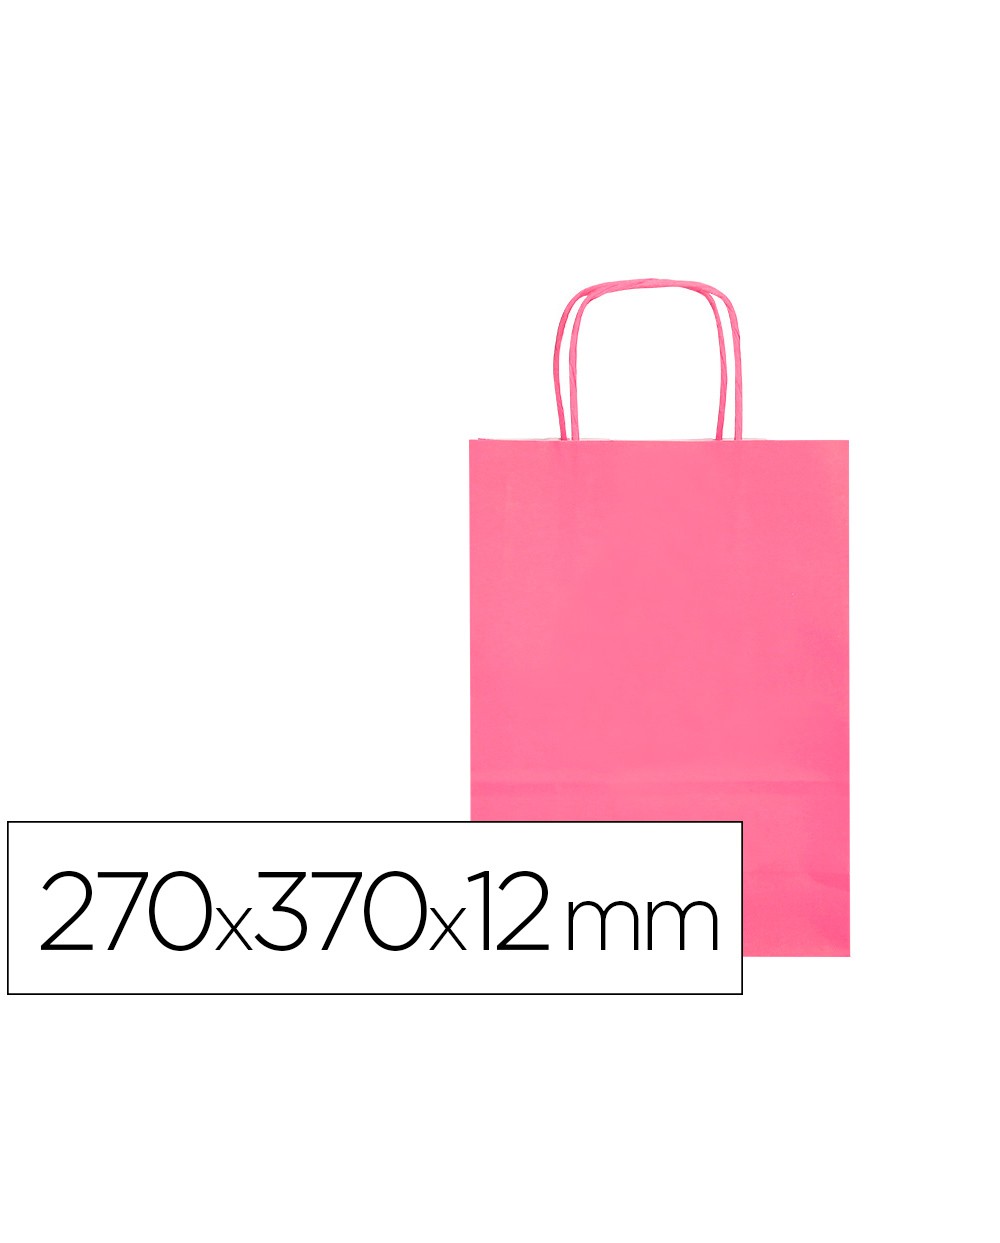 Bolsa papel q connect celulosa rosa m con asa retorcida 270x370x12 mm